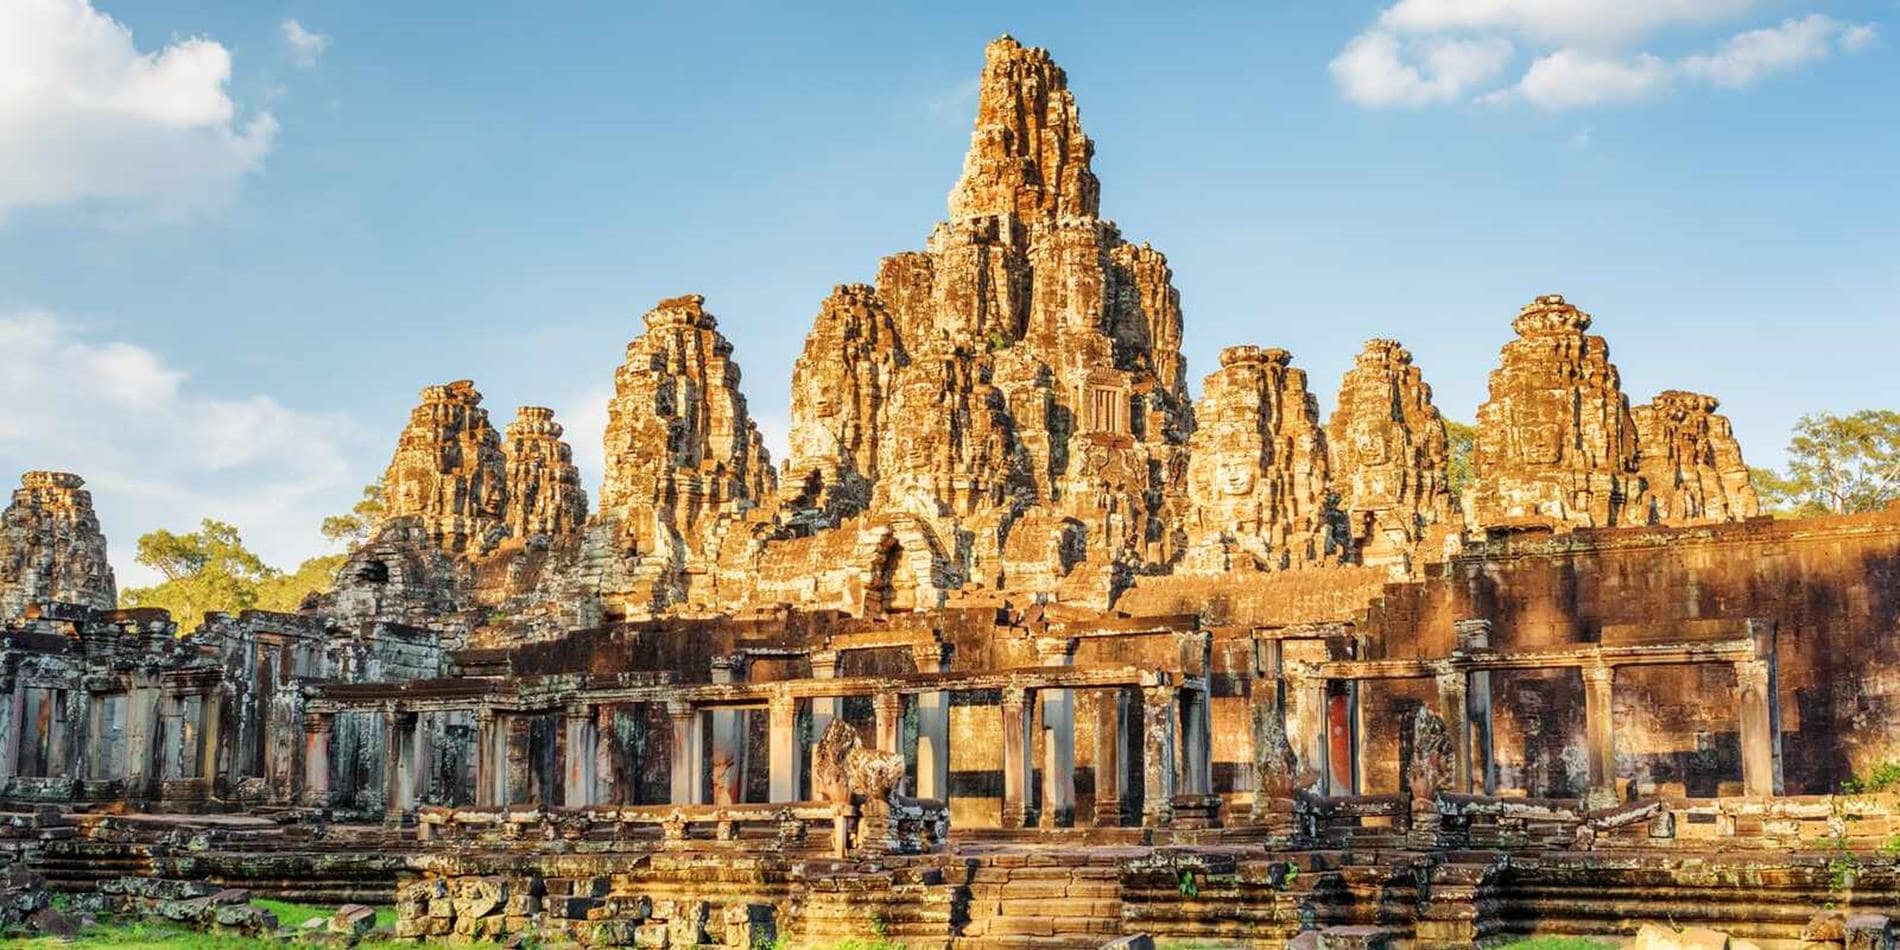 Angkor Thom Bayon Temple, Cambodia